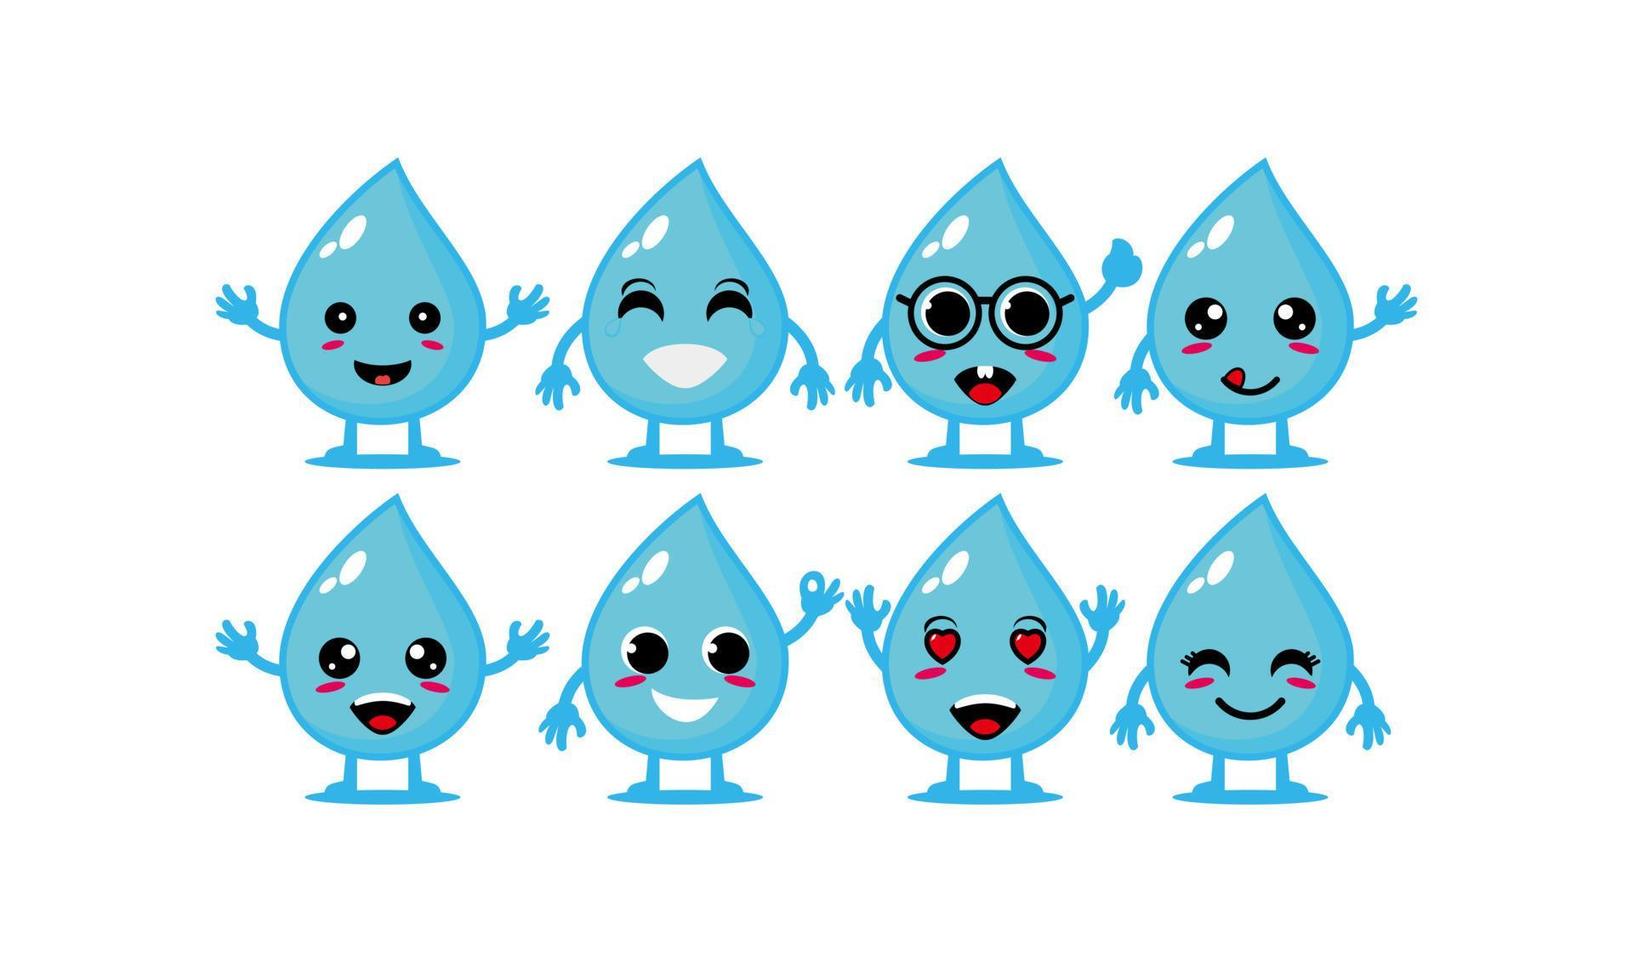 coleção de conjunto de gotas de água aqua sorridente fofa ilustração de mascote de personagem de cara de desenho animado plana vetorial isolada no fundo branco vetor